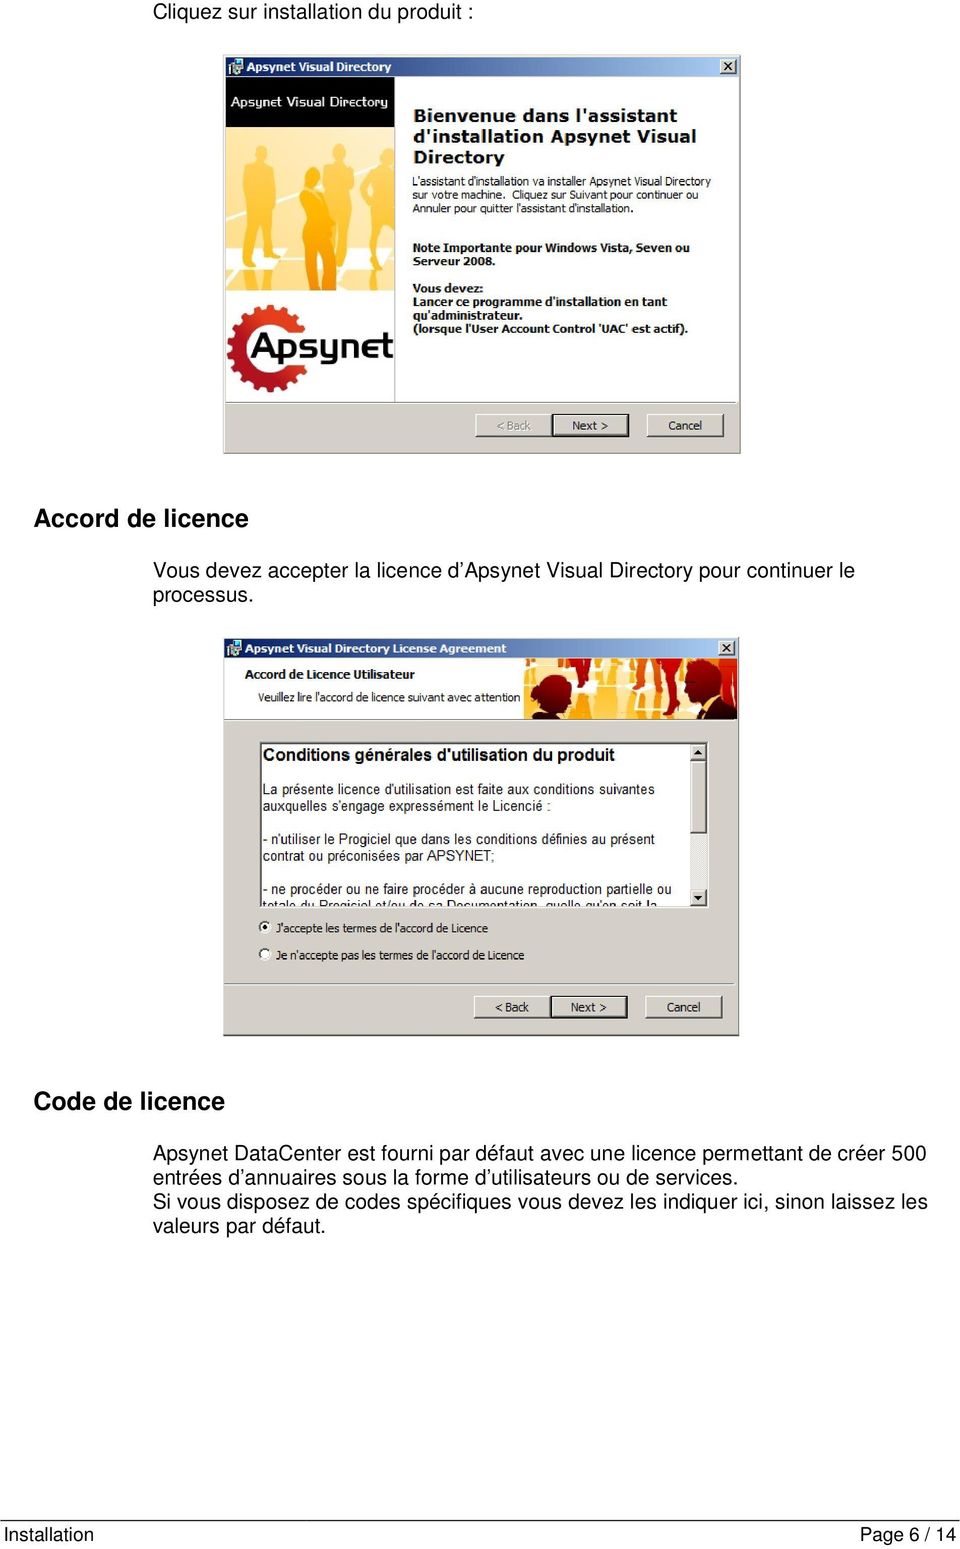 Code de licence Apsynet DataCenter est fourni par défaut avec une licence permettant de créer 500 entrées